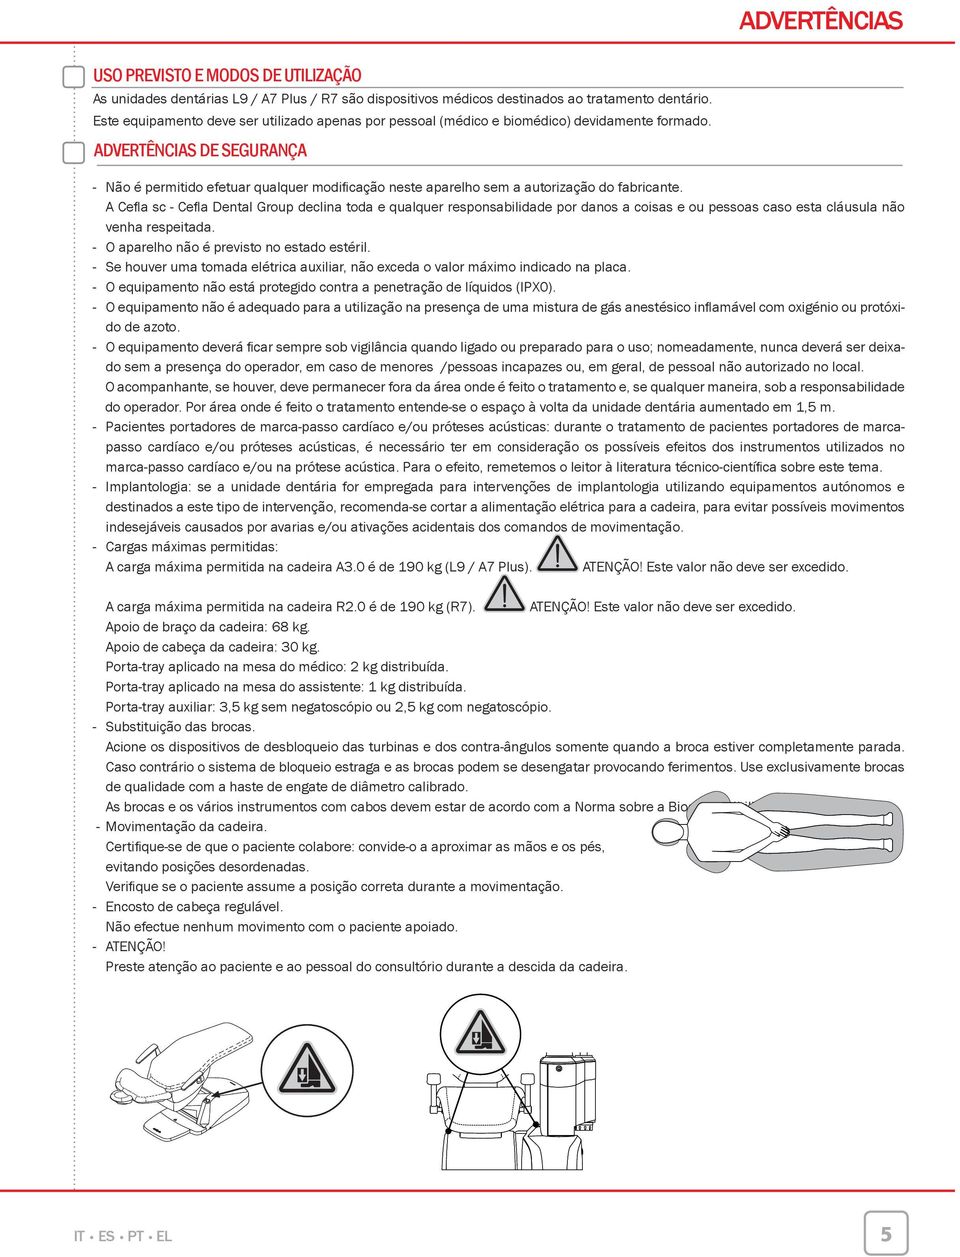 ADVERTÊNCIAS DE SEGURANÇA - Não é permido efetuar qualquer modifi cação neste aparelho sem a autorização do fabricante.